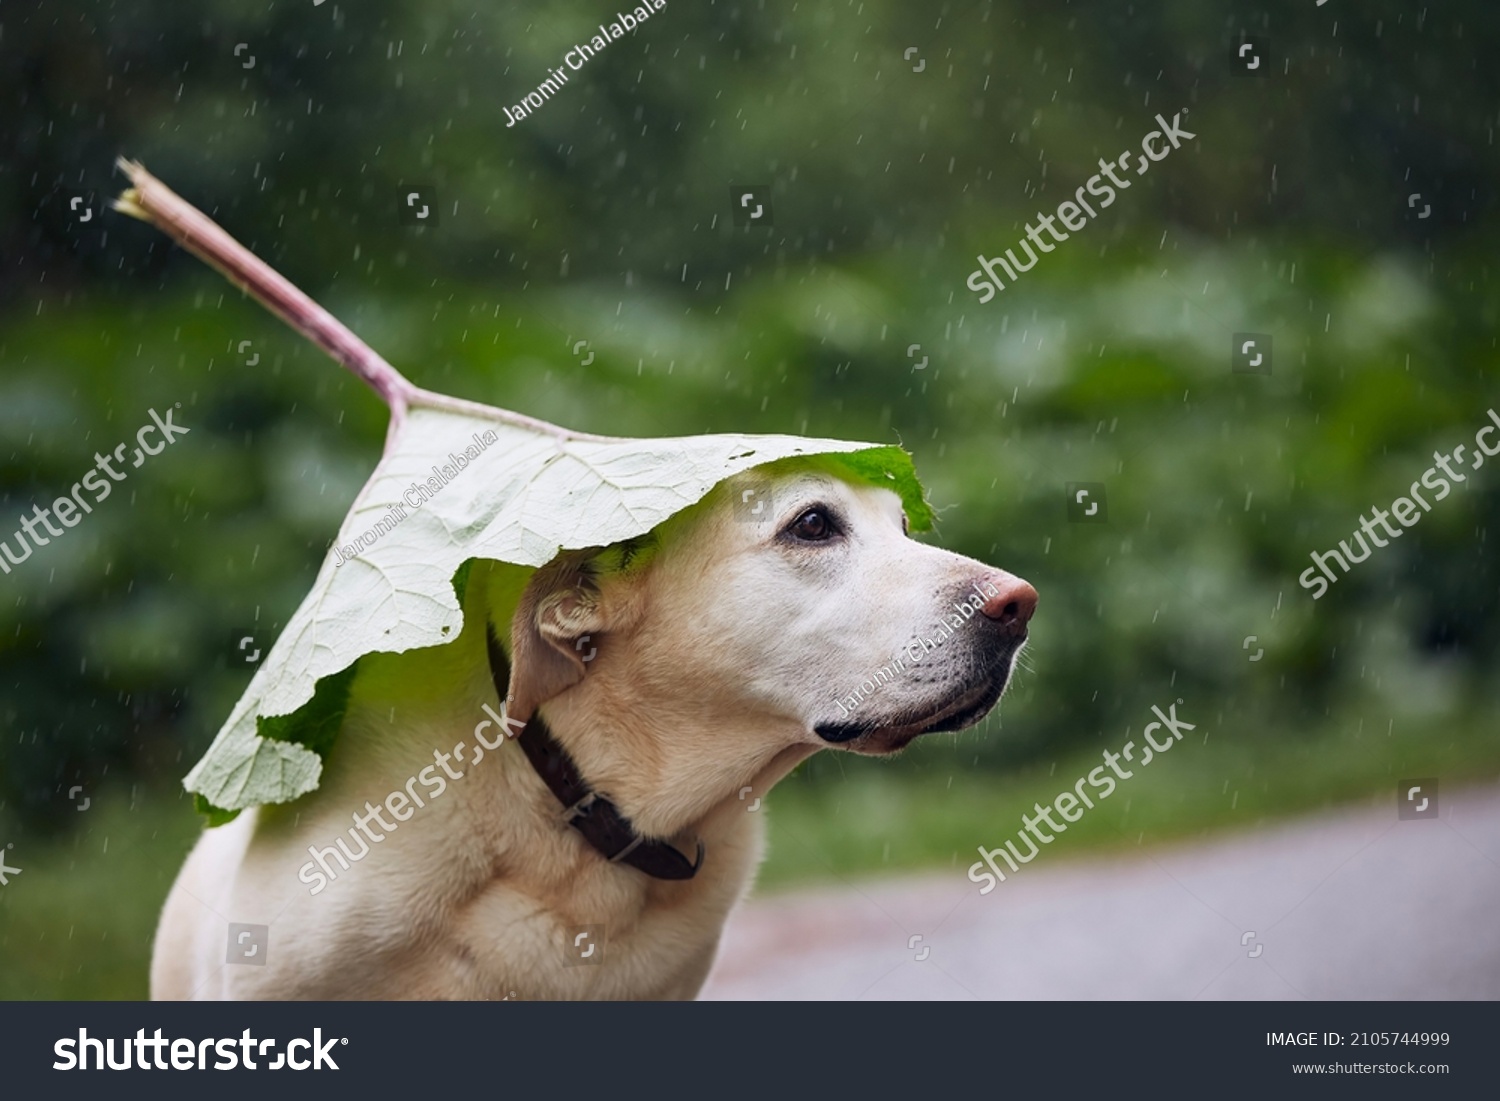 Funny portrait of dog during rainy day. Labrador retriever hiding head under leaf of burdock in rain.
 #2105744999